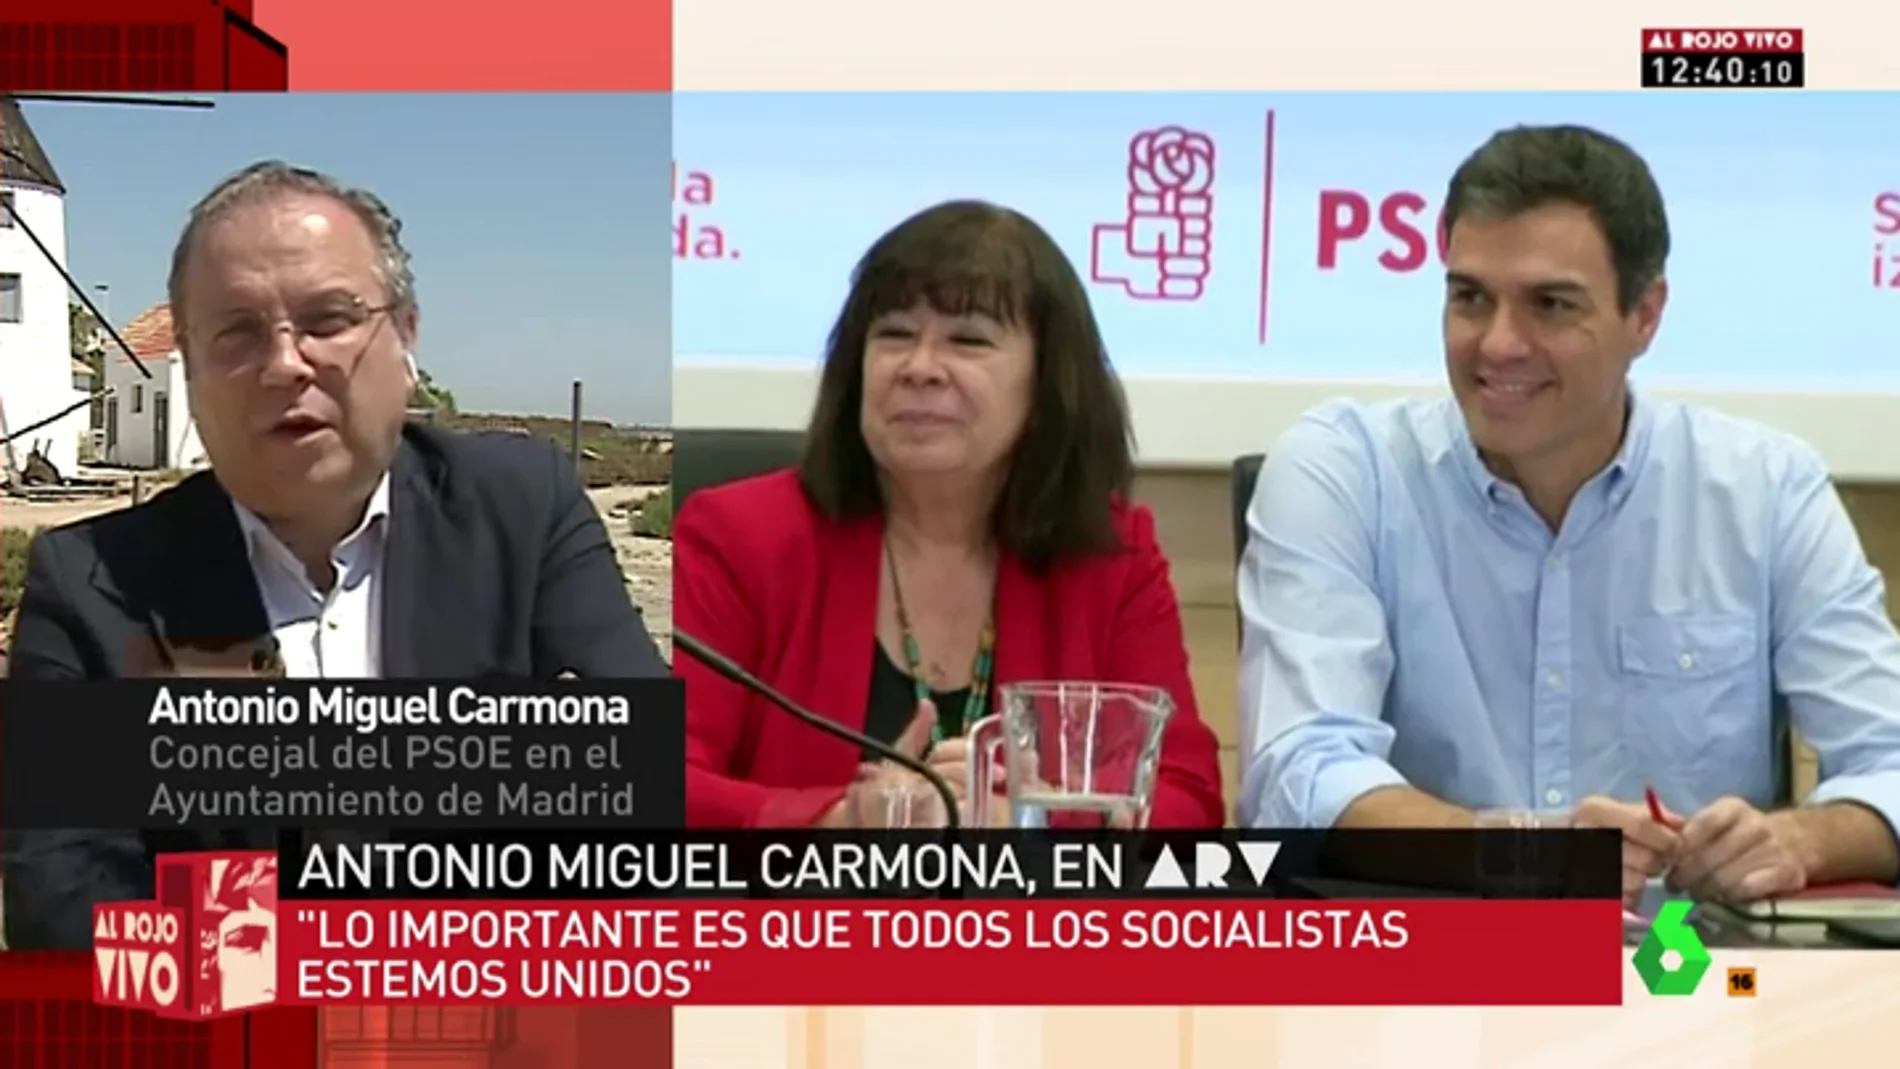 Carmona: "Quiero liderar la integración de los socialistas"